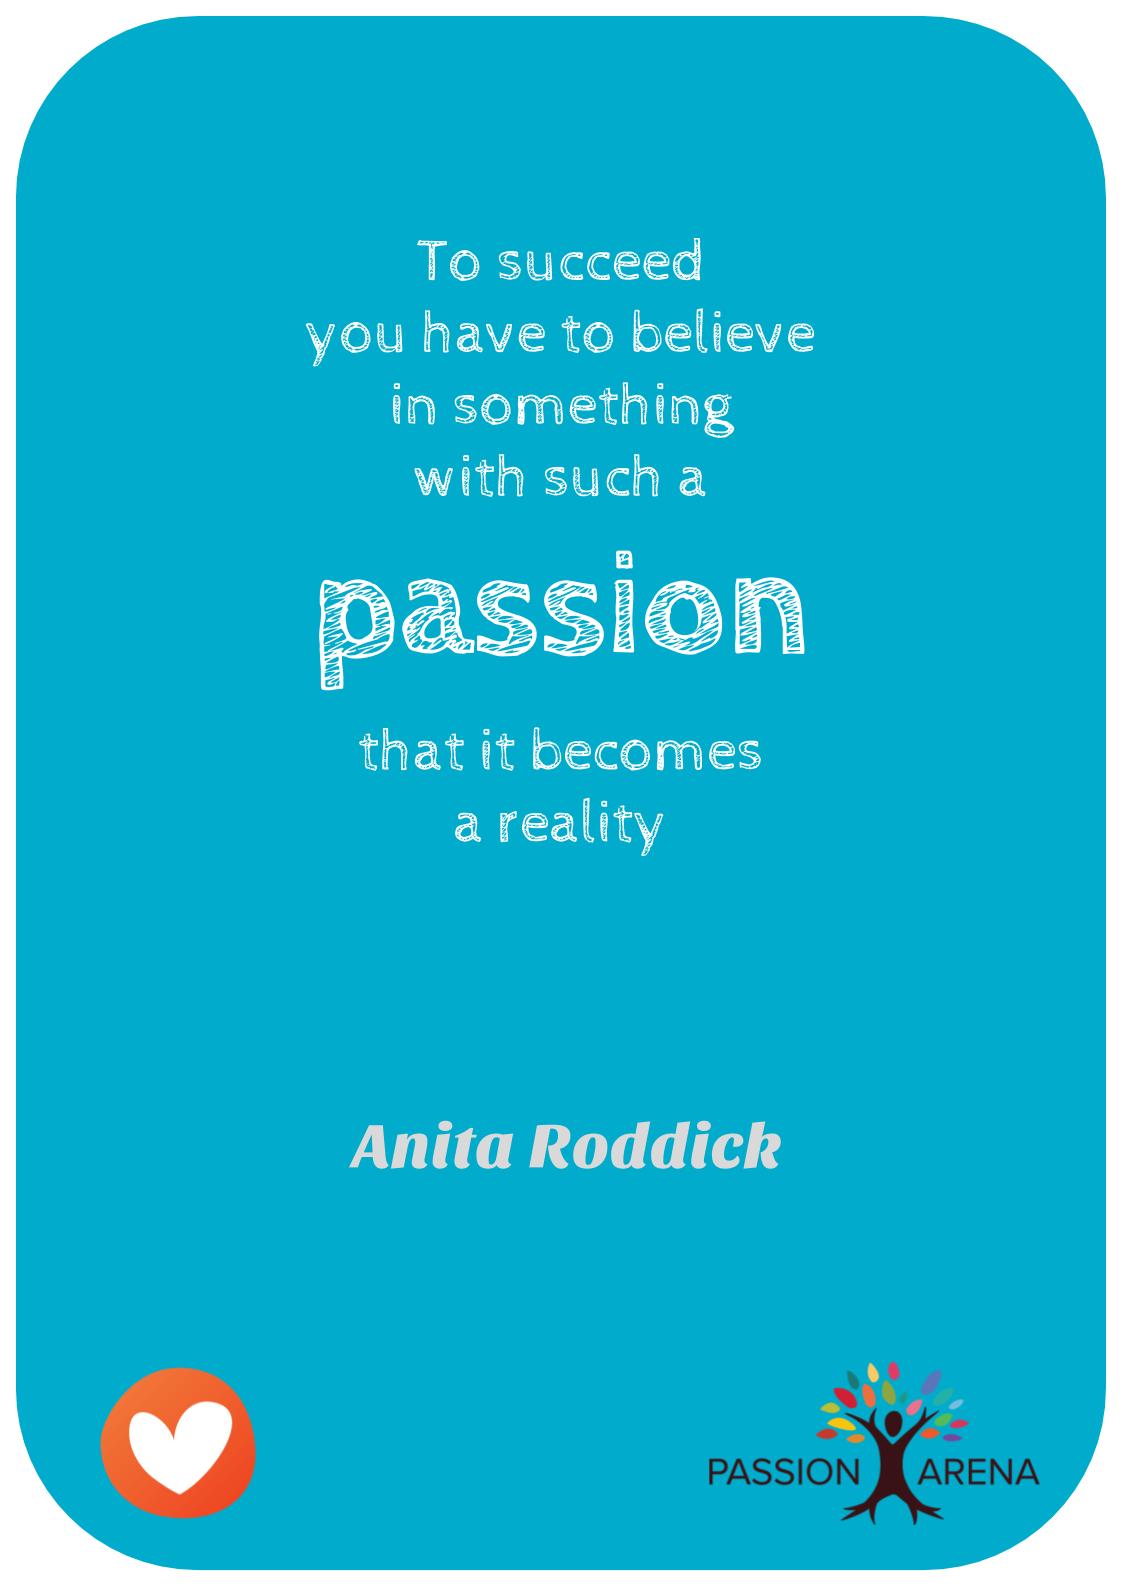 Anita Roddick – Passion Quote